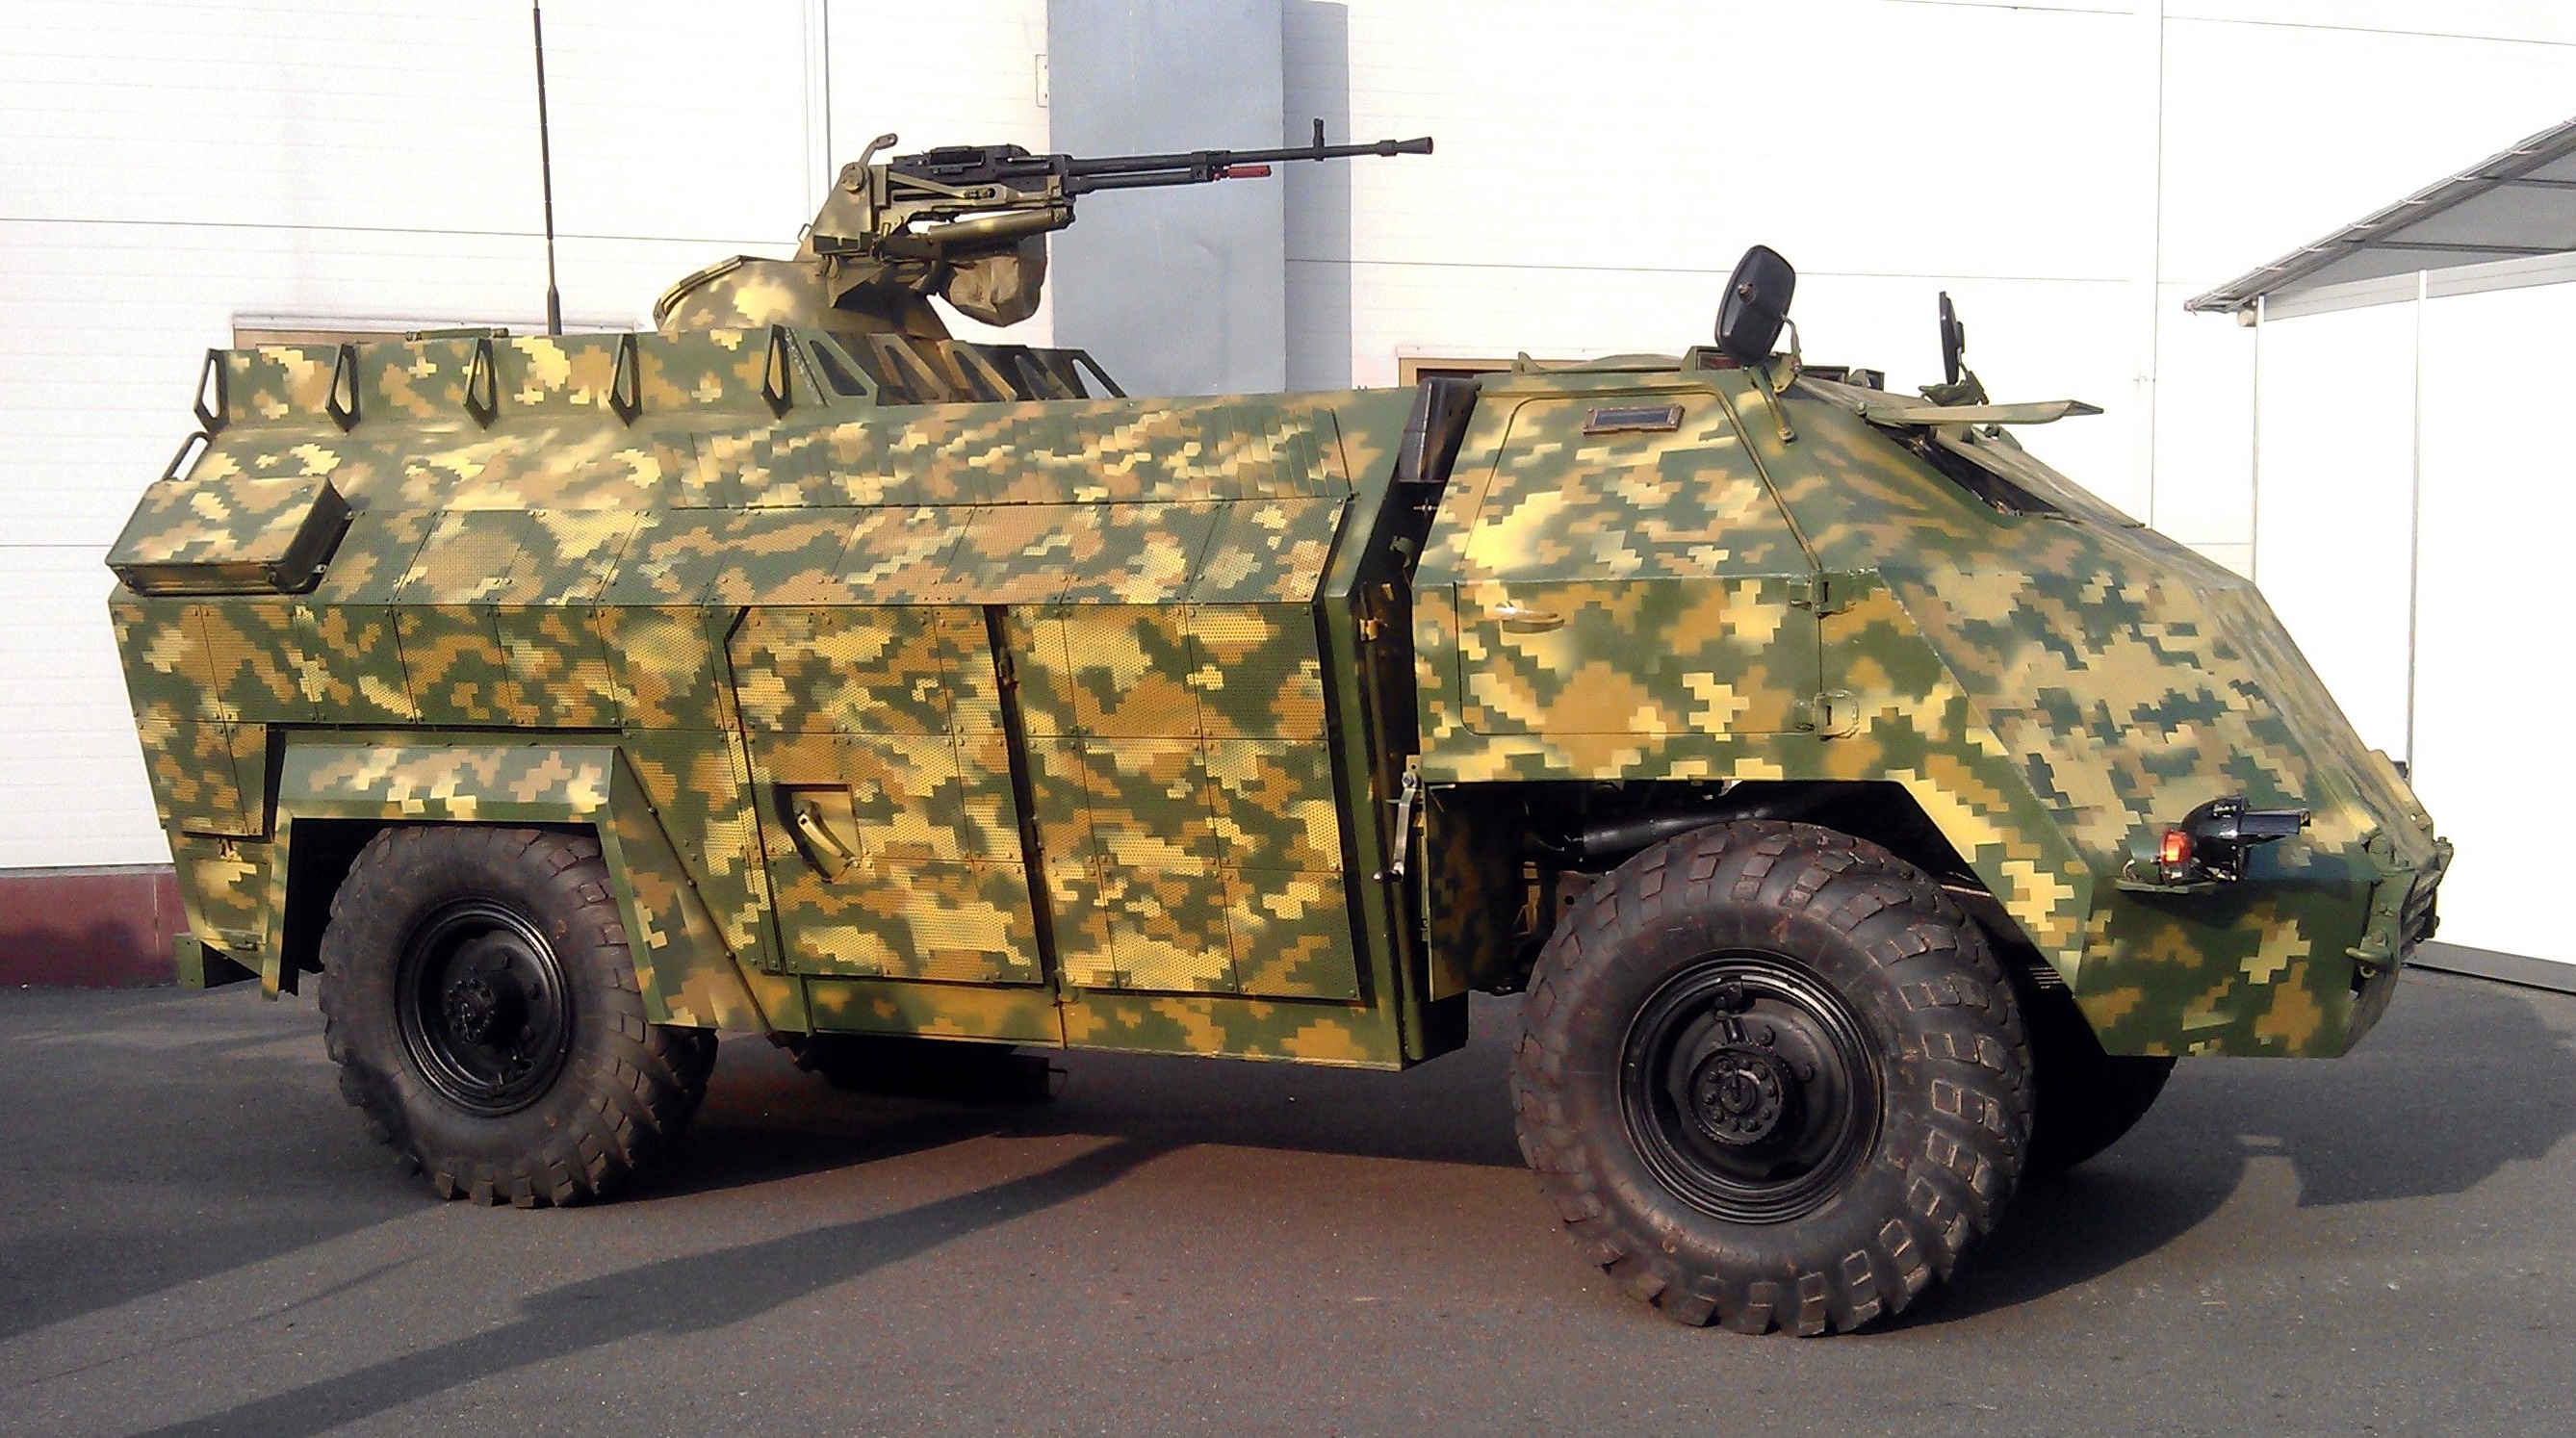 Siły Zbrojne Ukrainy pokazały „tajną broń” w wojnie z Rosją – unikalny ukraiński pojazd pancerny „Gadfly”, który jest dostępny w jednym egzemplarzu